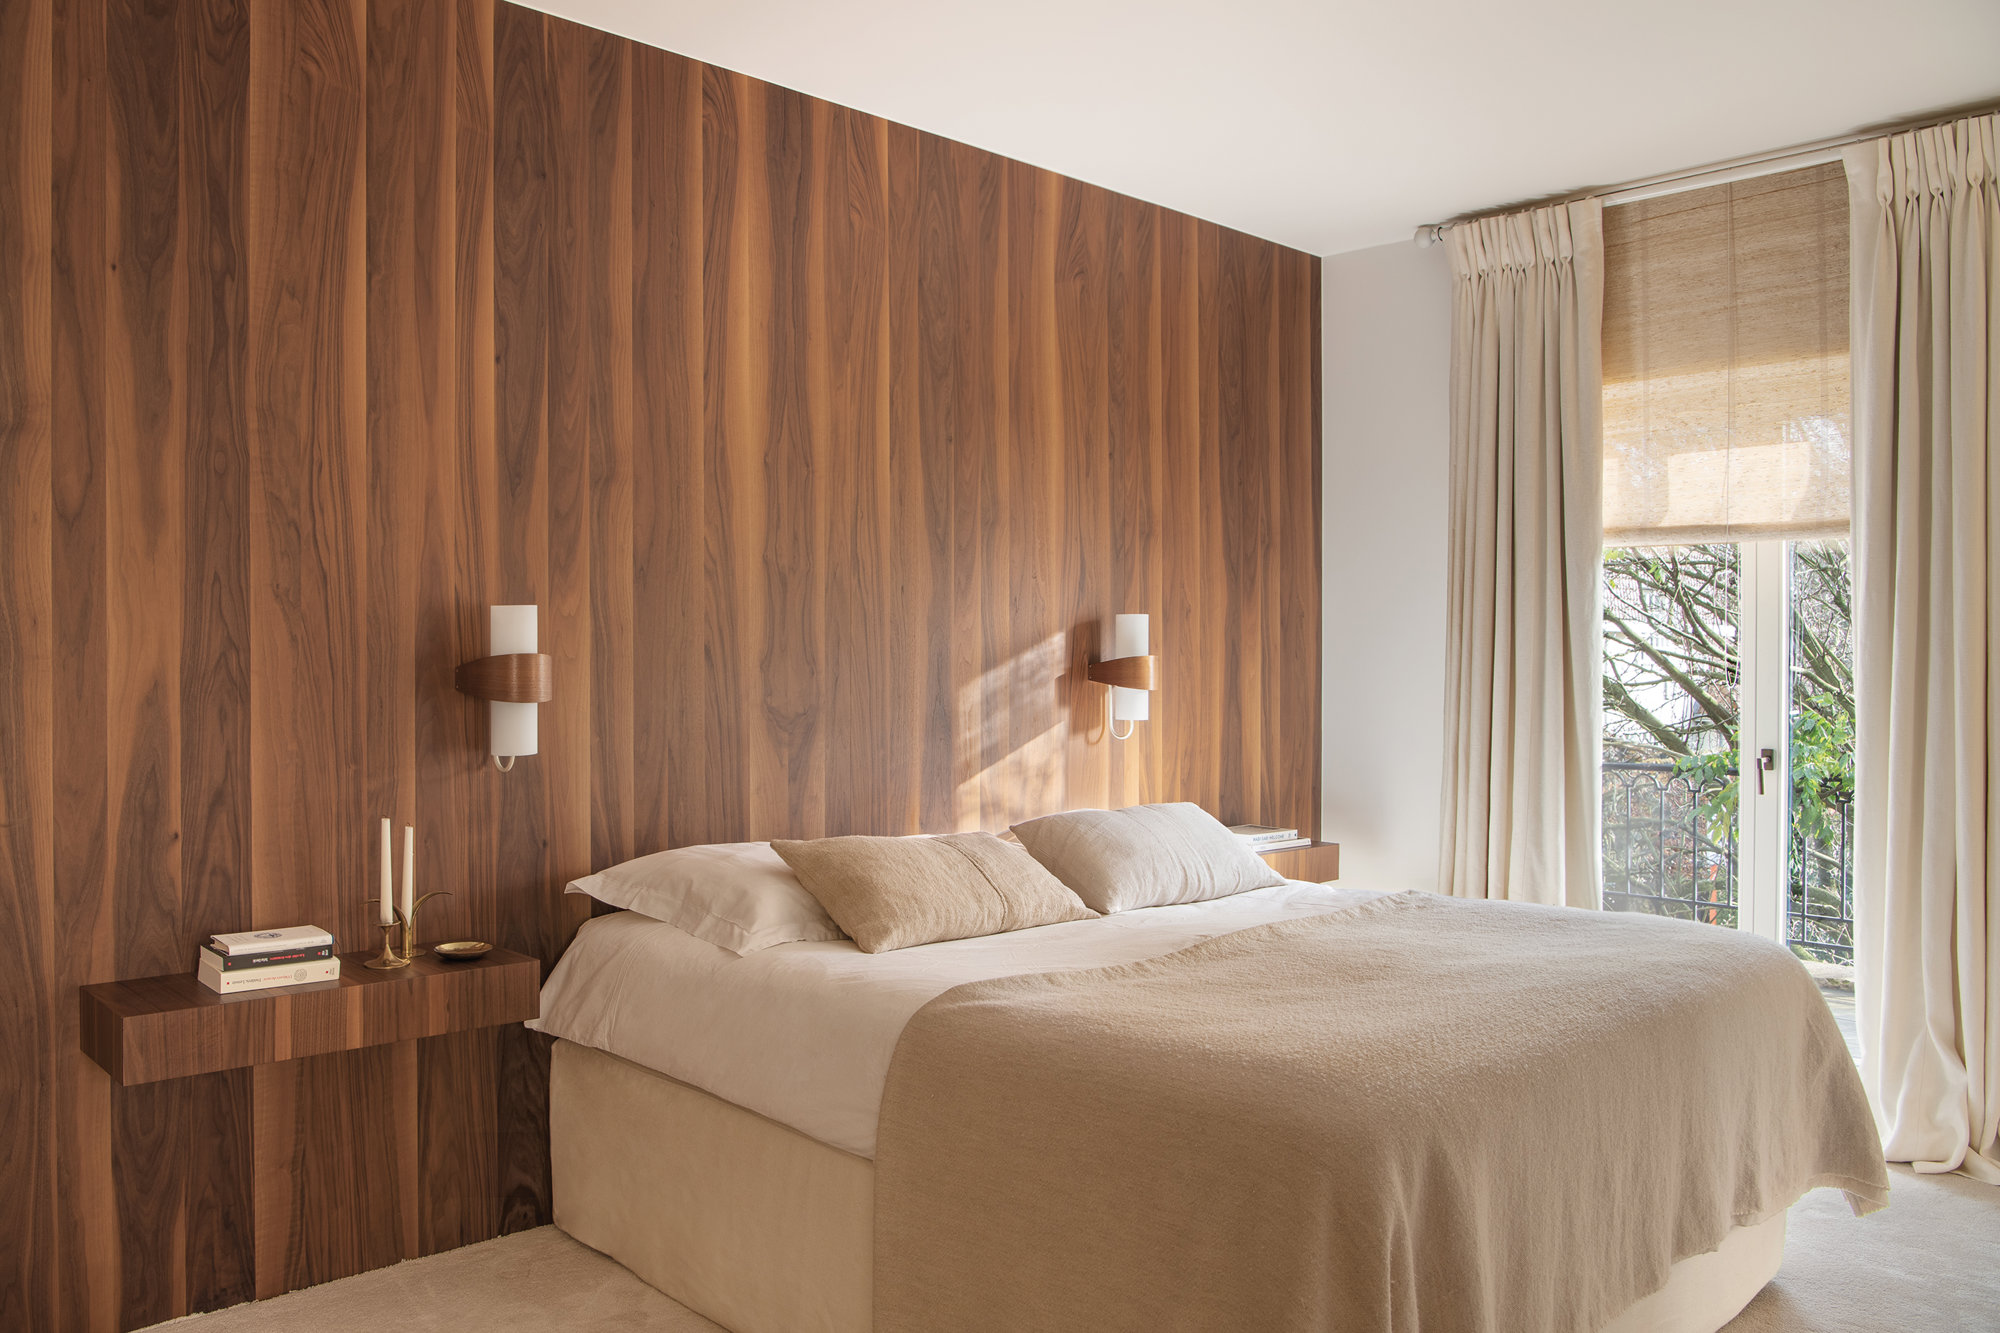 dormitorio principal en tonos neutros y madera de nogal